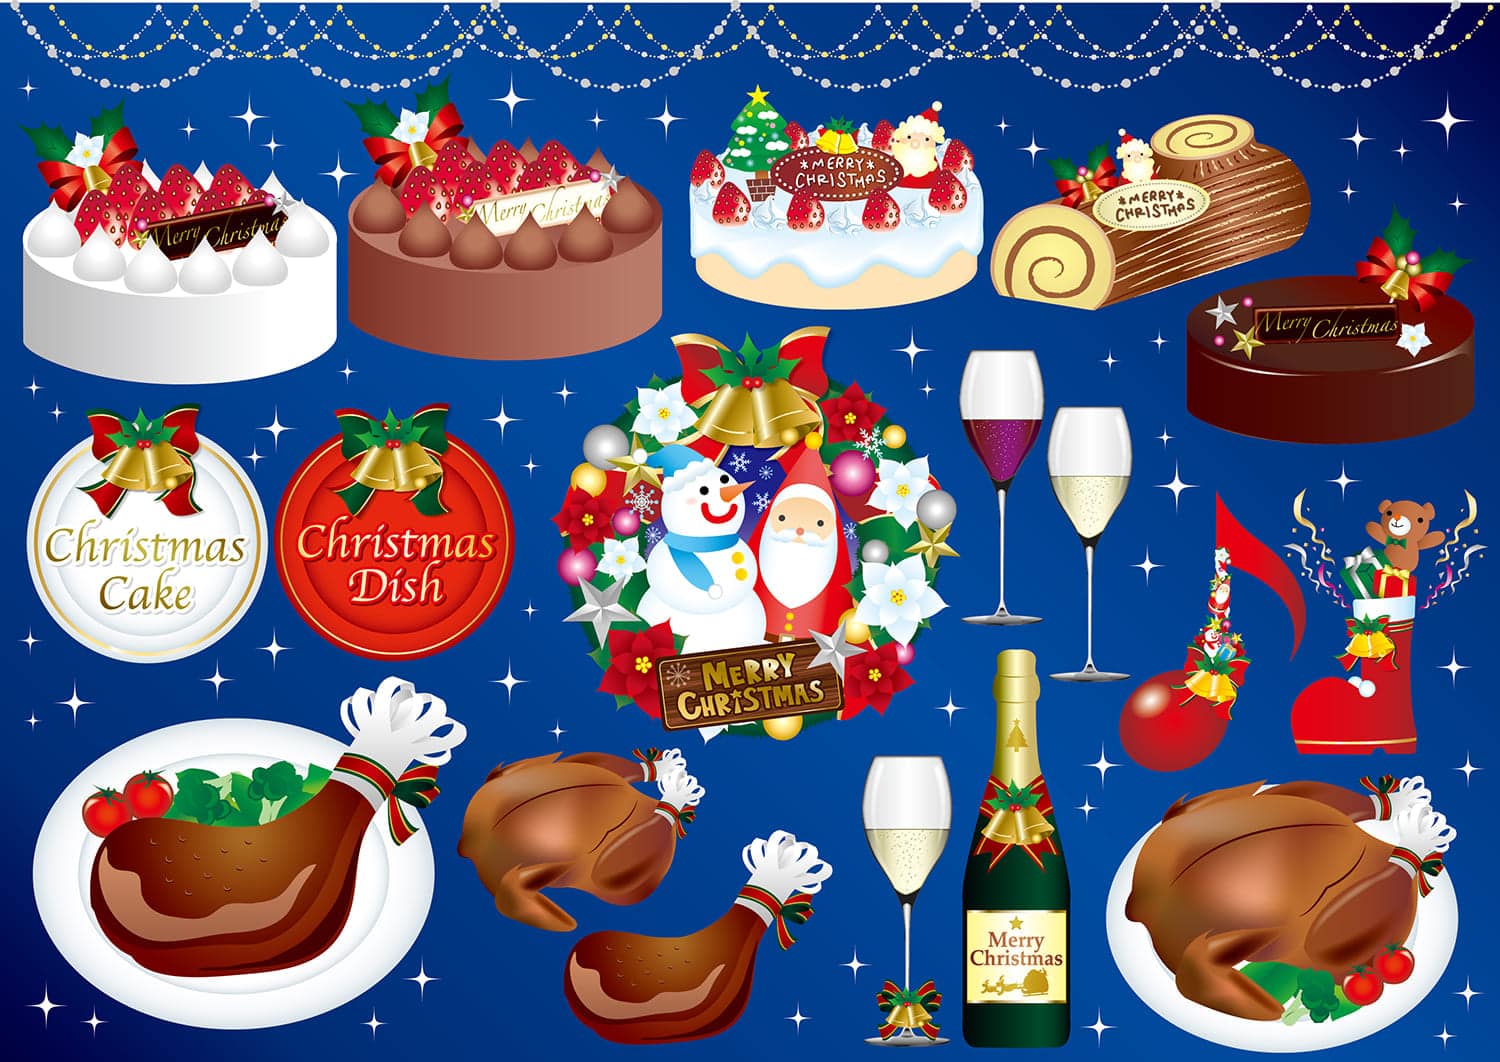 22ケーキ屋さんのクリスマスケーキ予約方法 特典まとめ シャトレーゼ 不二家 コージーコーナー コンビニとファミレスのスイーツのおすすめを紹介するブログ